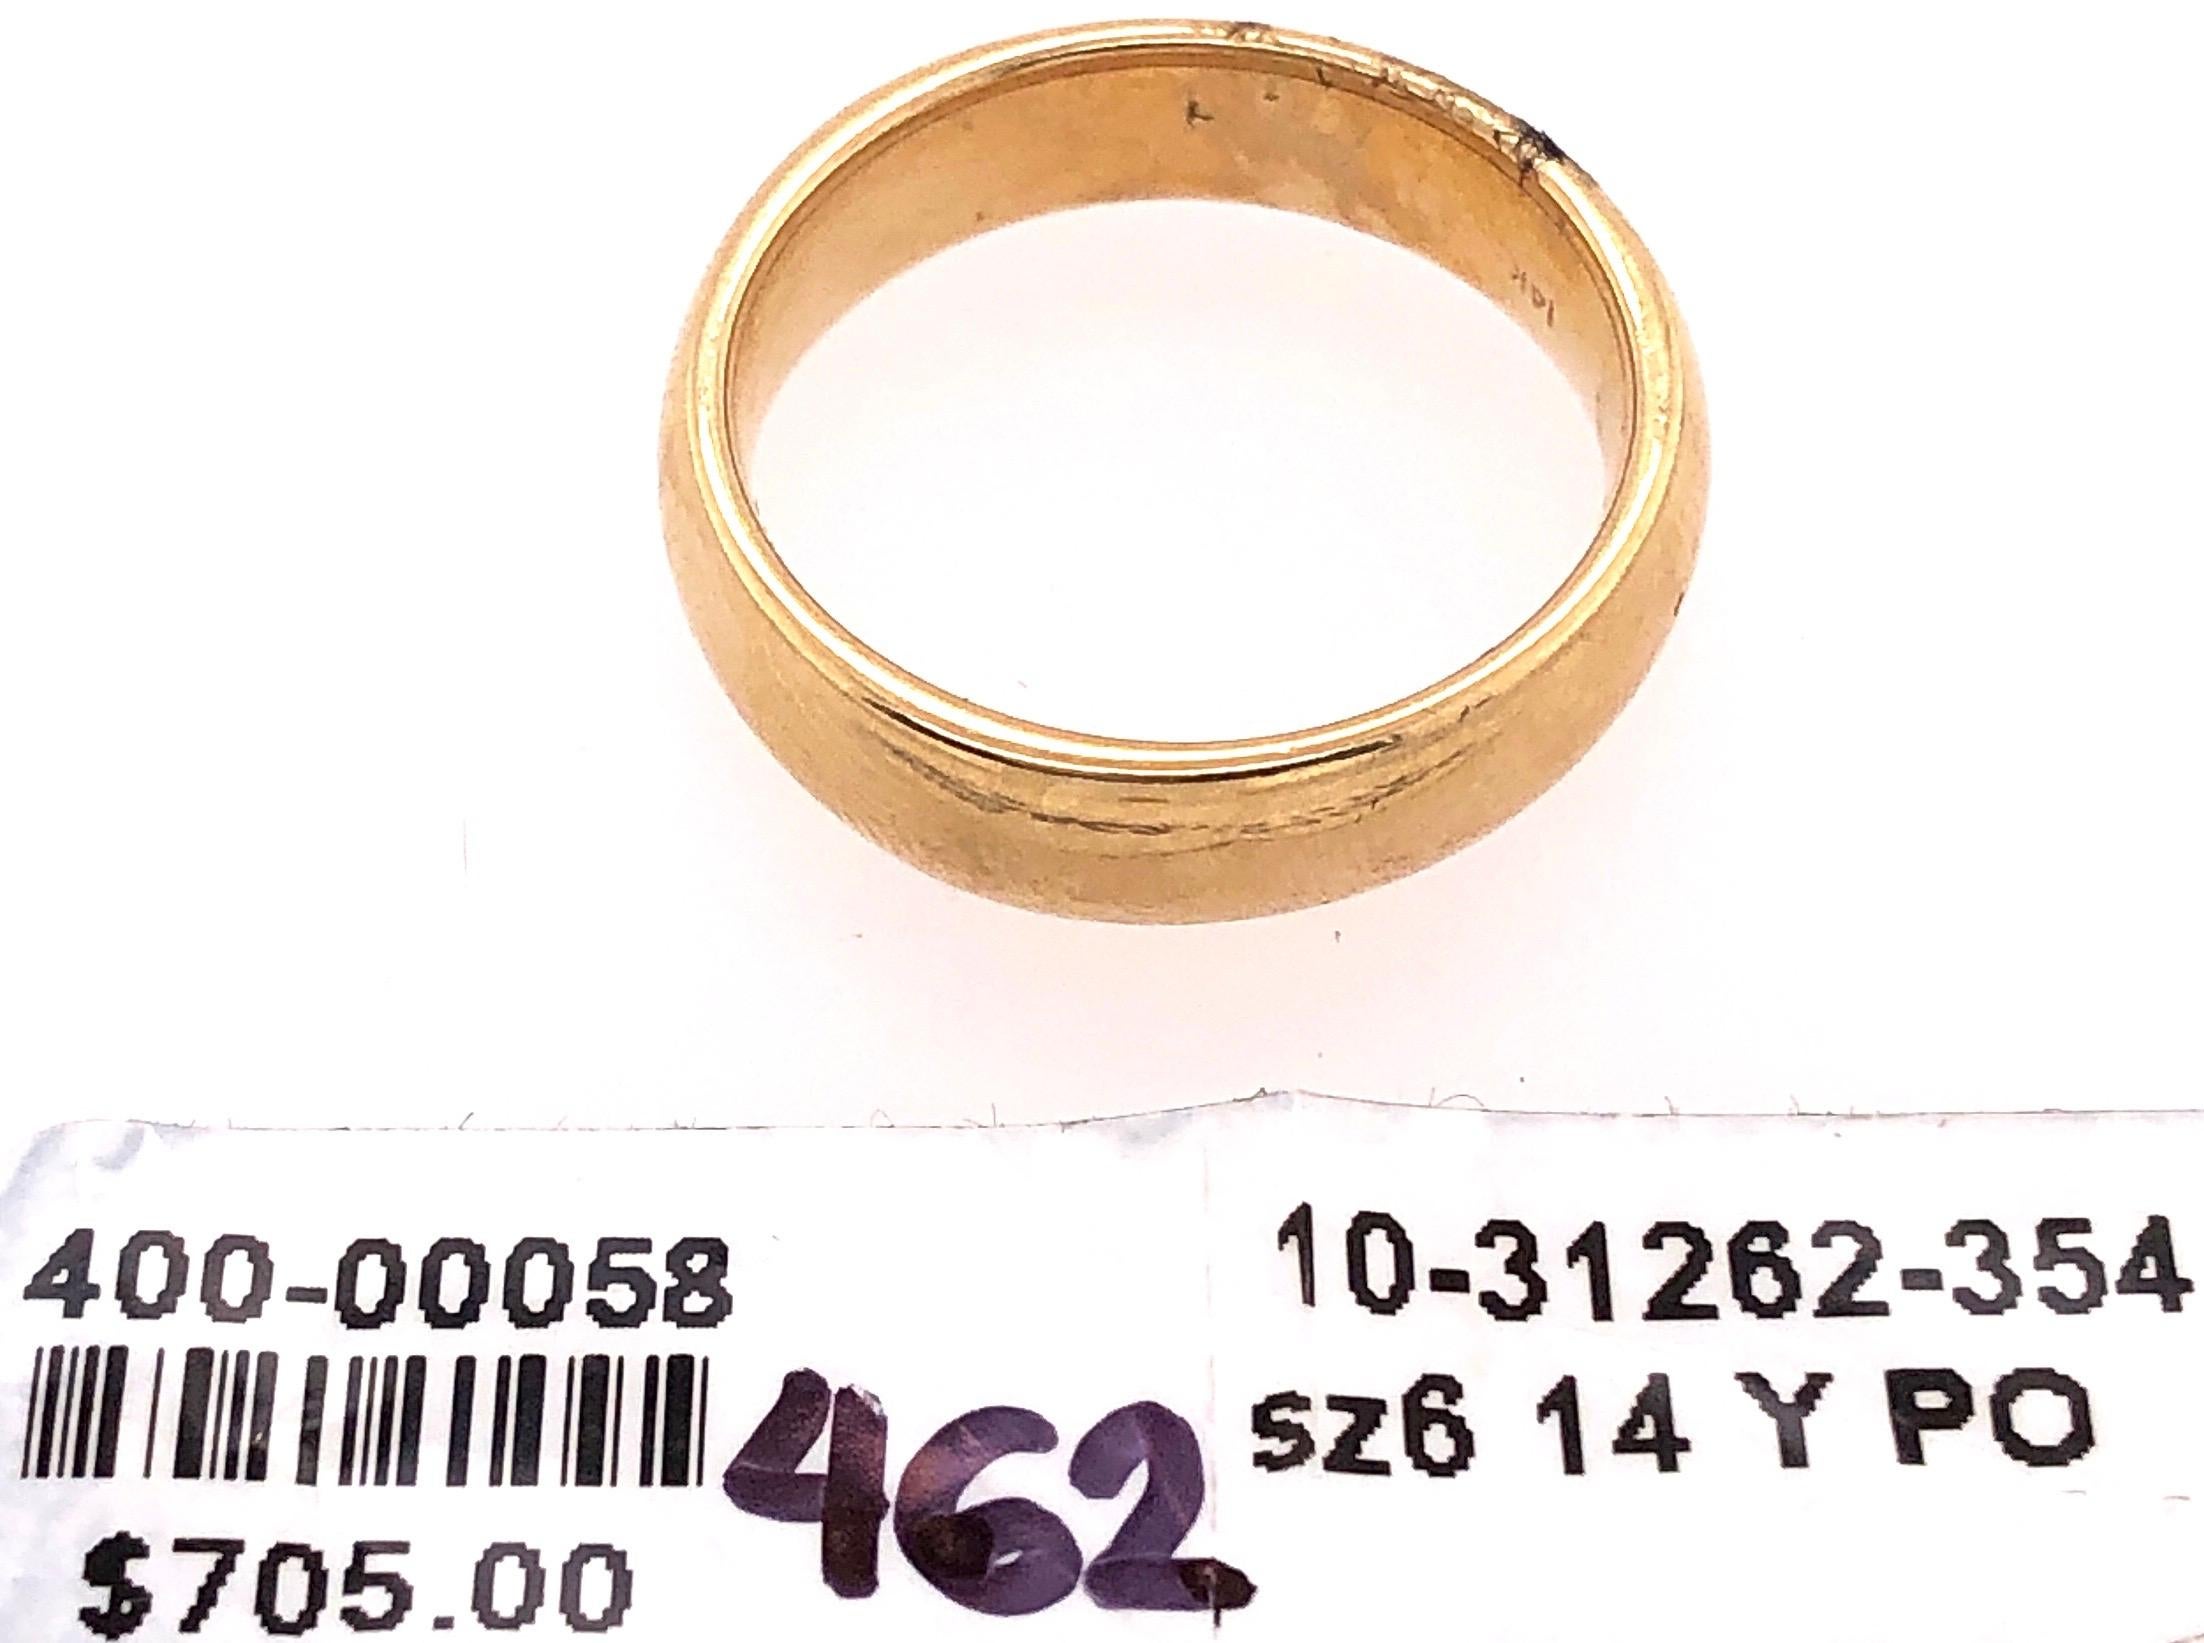 Women's or Men's 14 Karat Yellow Gold Wedding / Band Ring For Sale